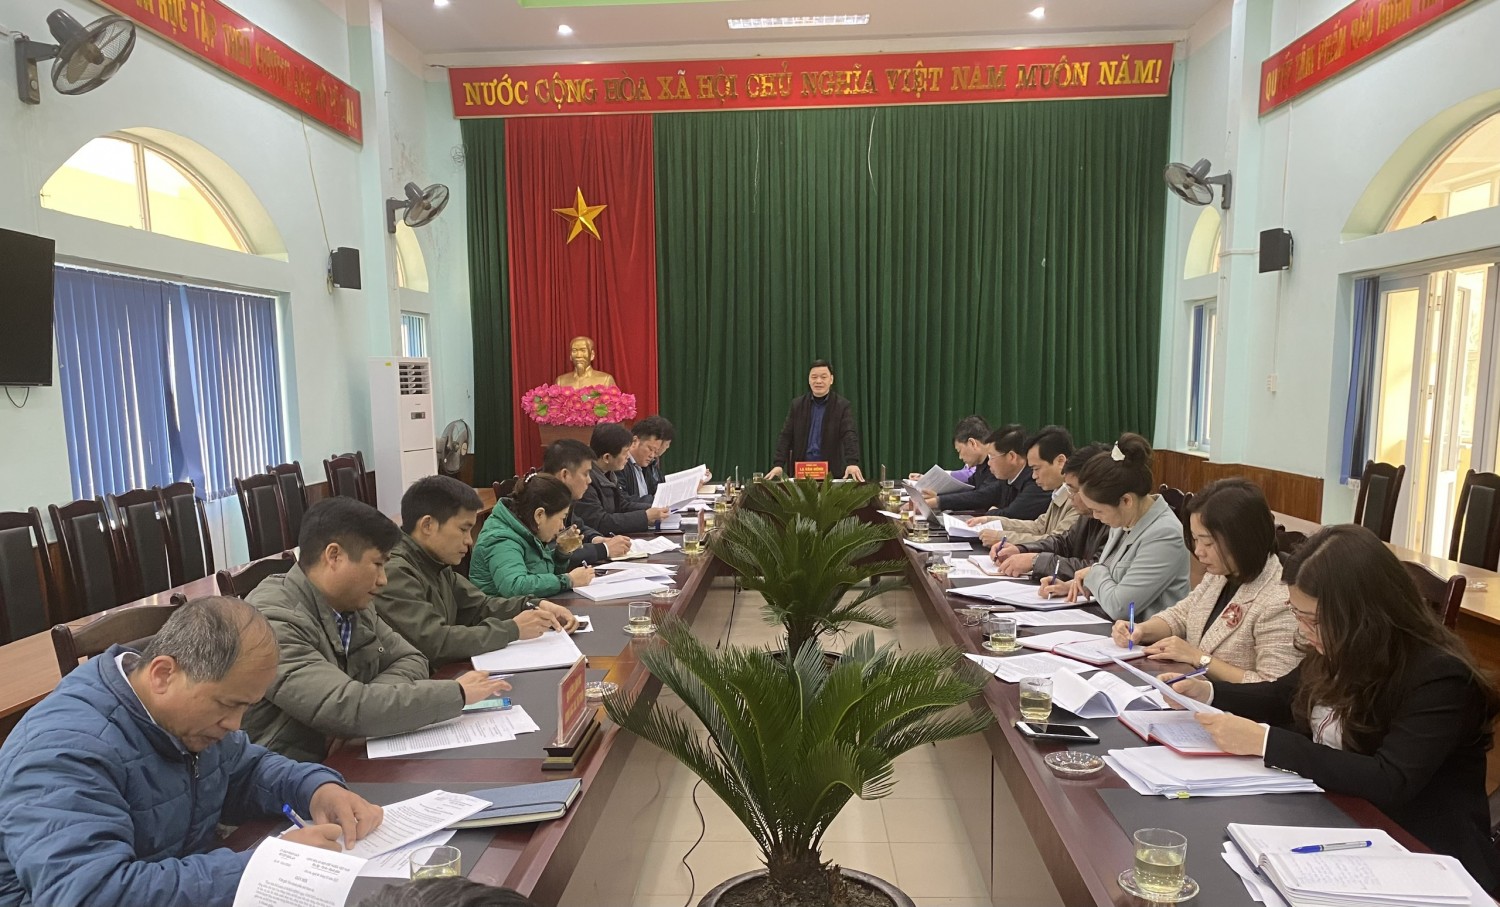 Trưởng Ban Kinh tế - Ngân sách HĐND tỉnh La Văn Hồng phát biểu tại buổi giám sát